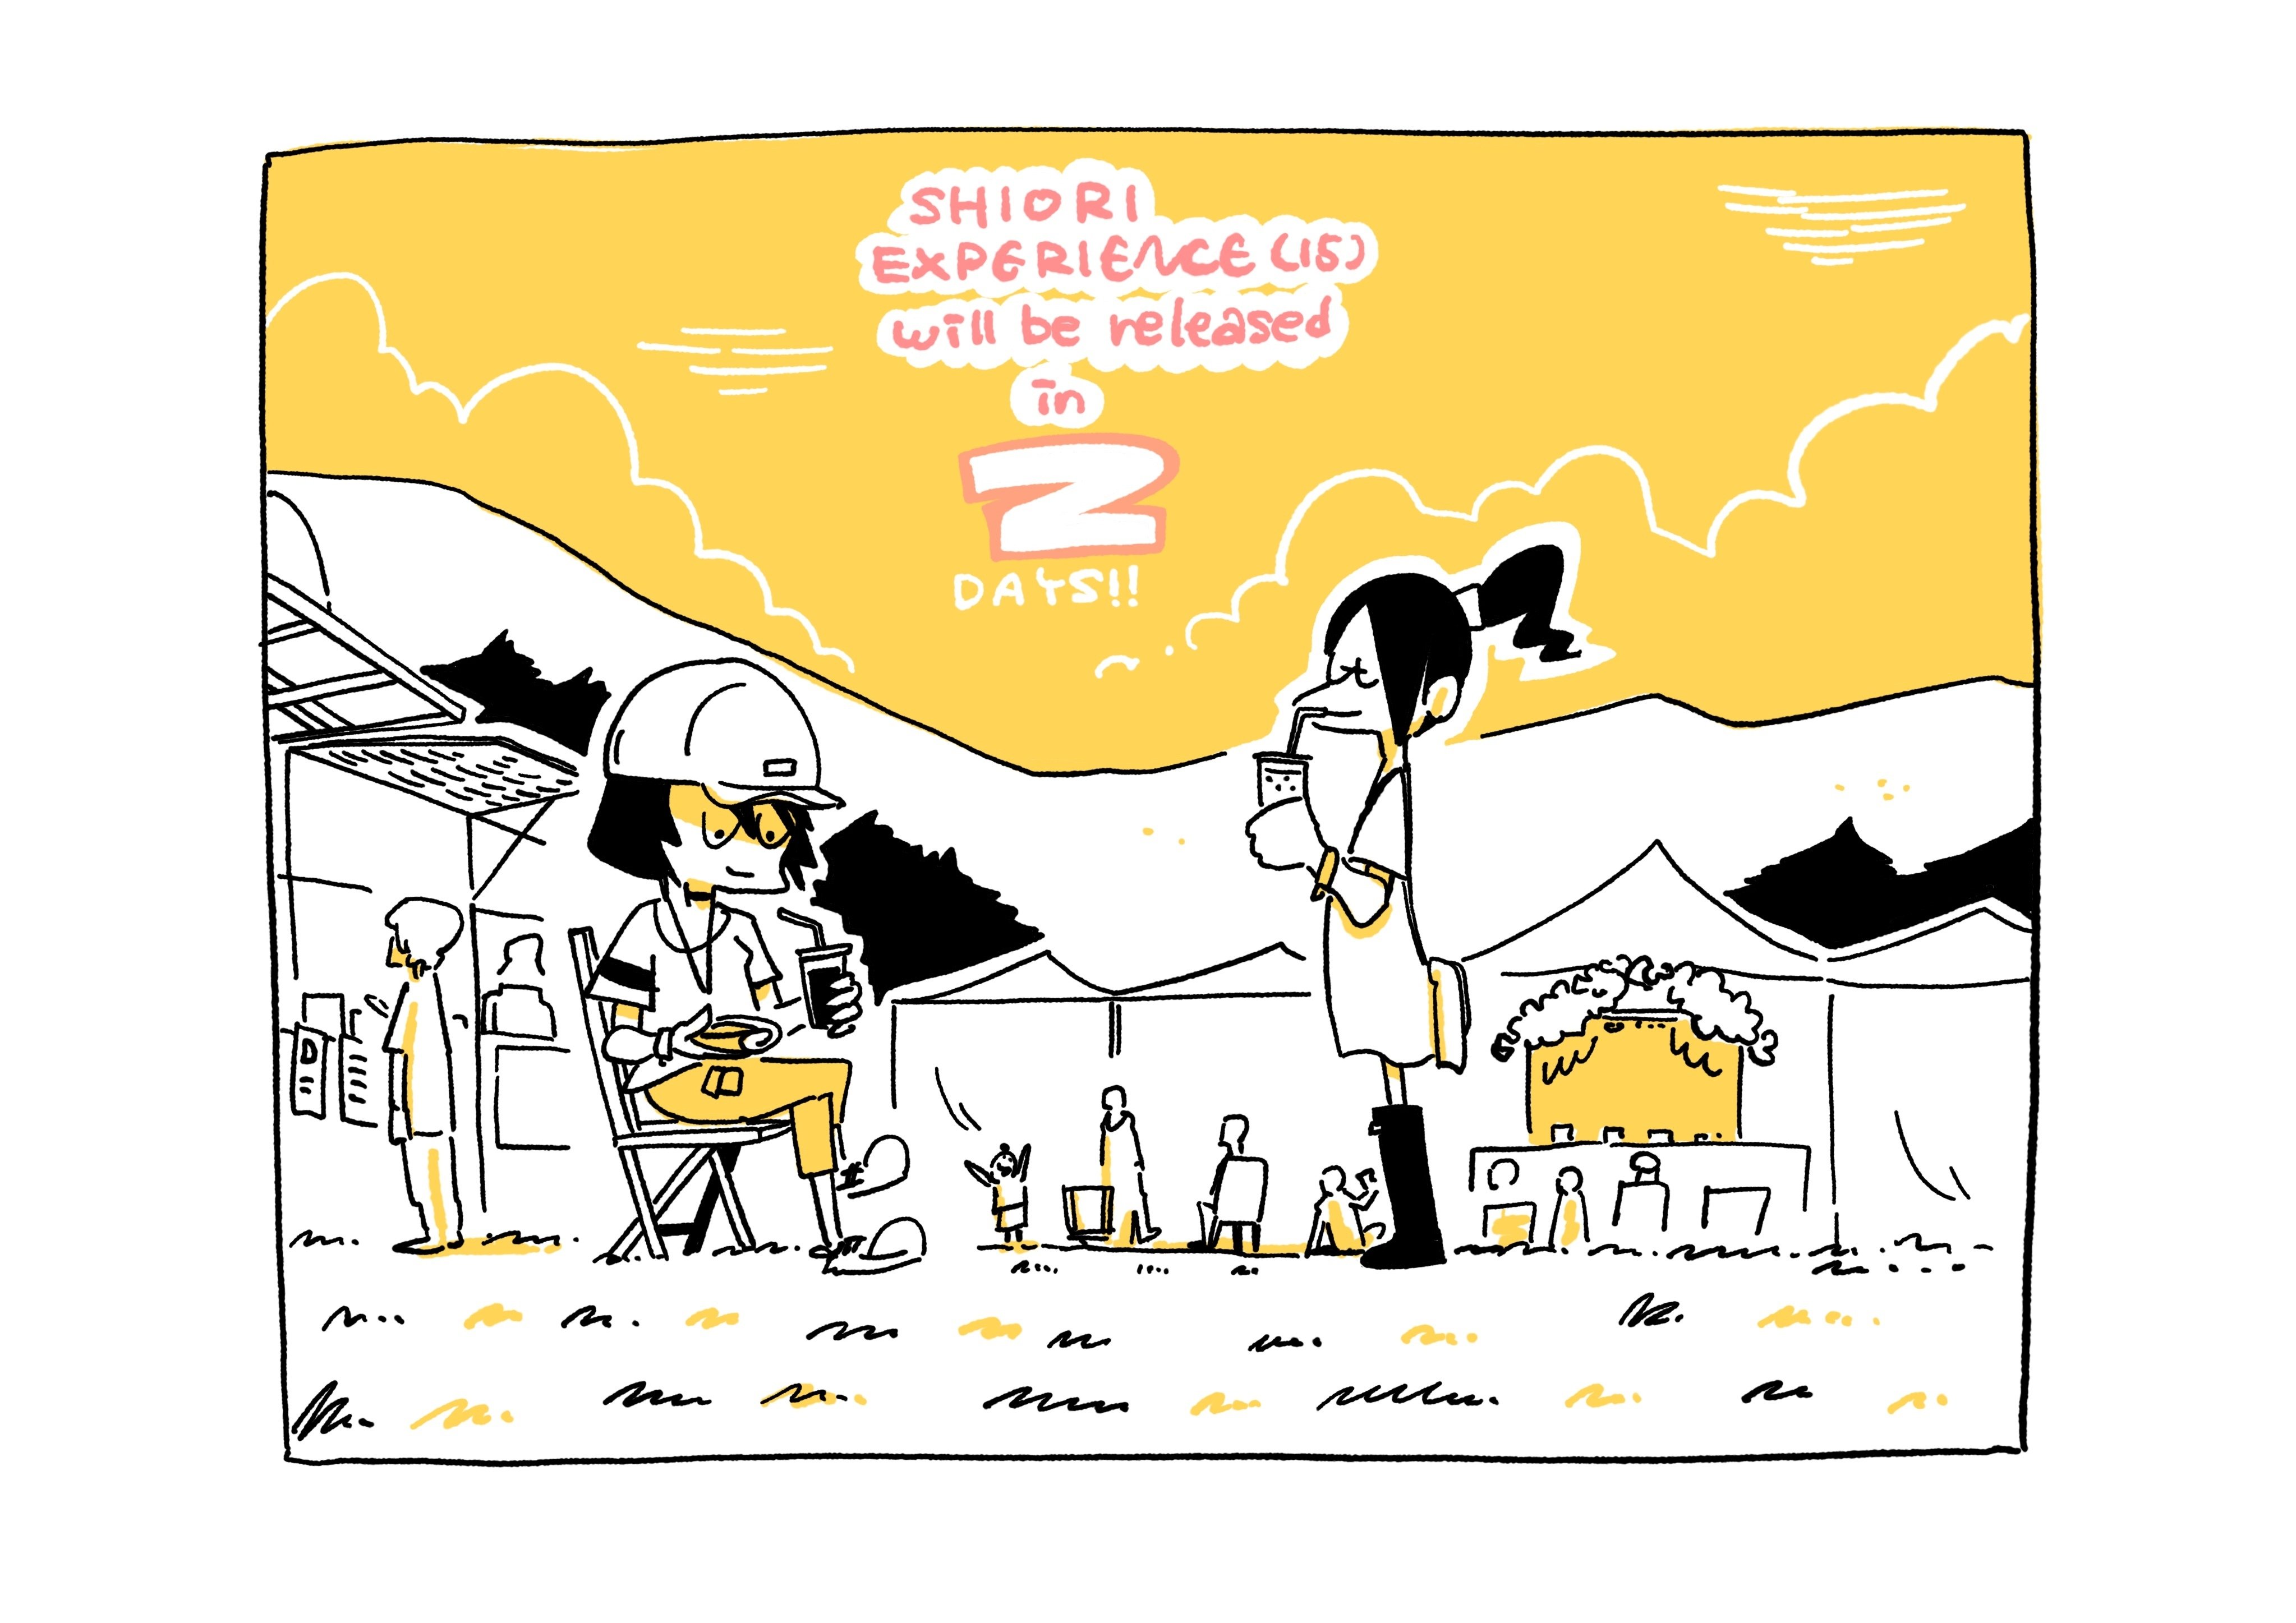 シオリエクスペリエンス最新第15巻発売まであと2日 旅する漫画家shimi43 Note